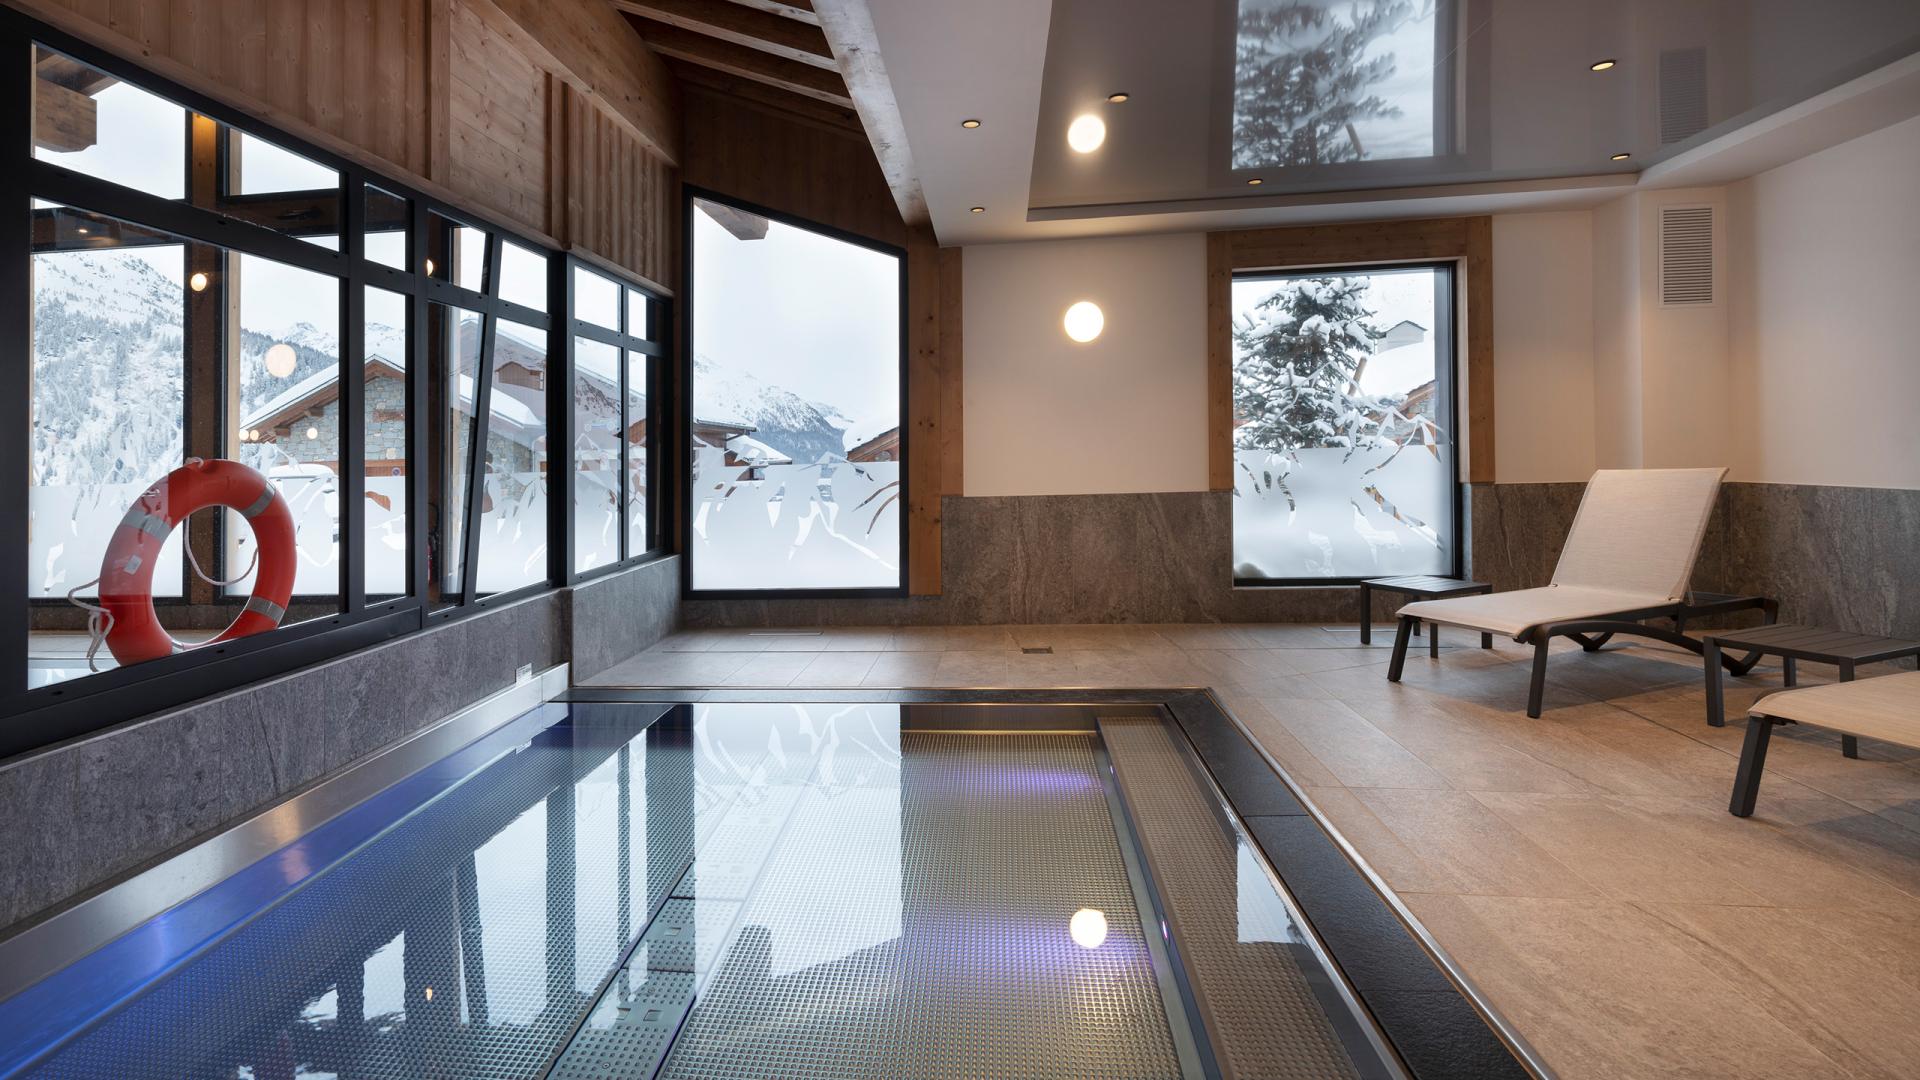 Le bain nordique de l'hôtel et résidence Alpen Lodge de La Rosière